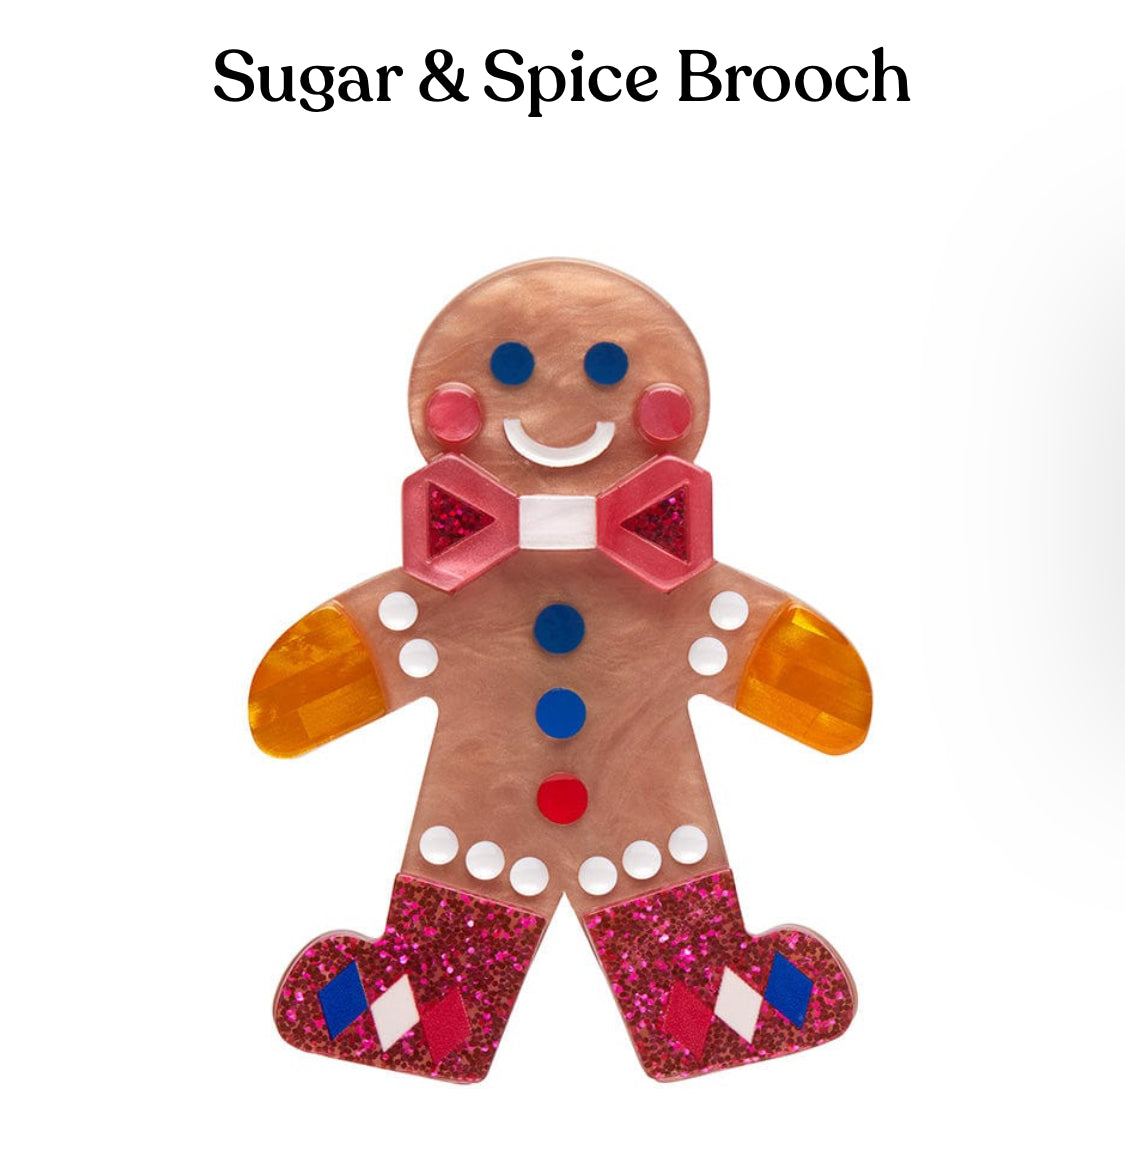 Sugar & Spice Brooch